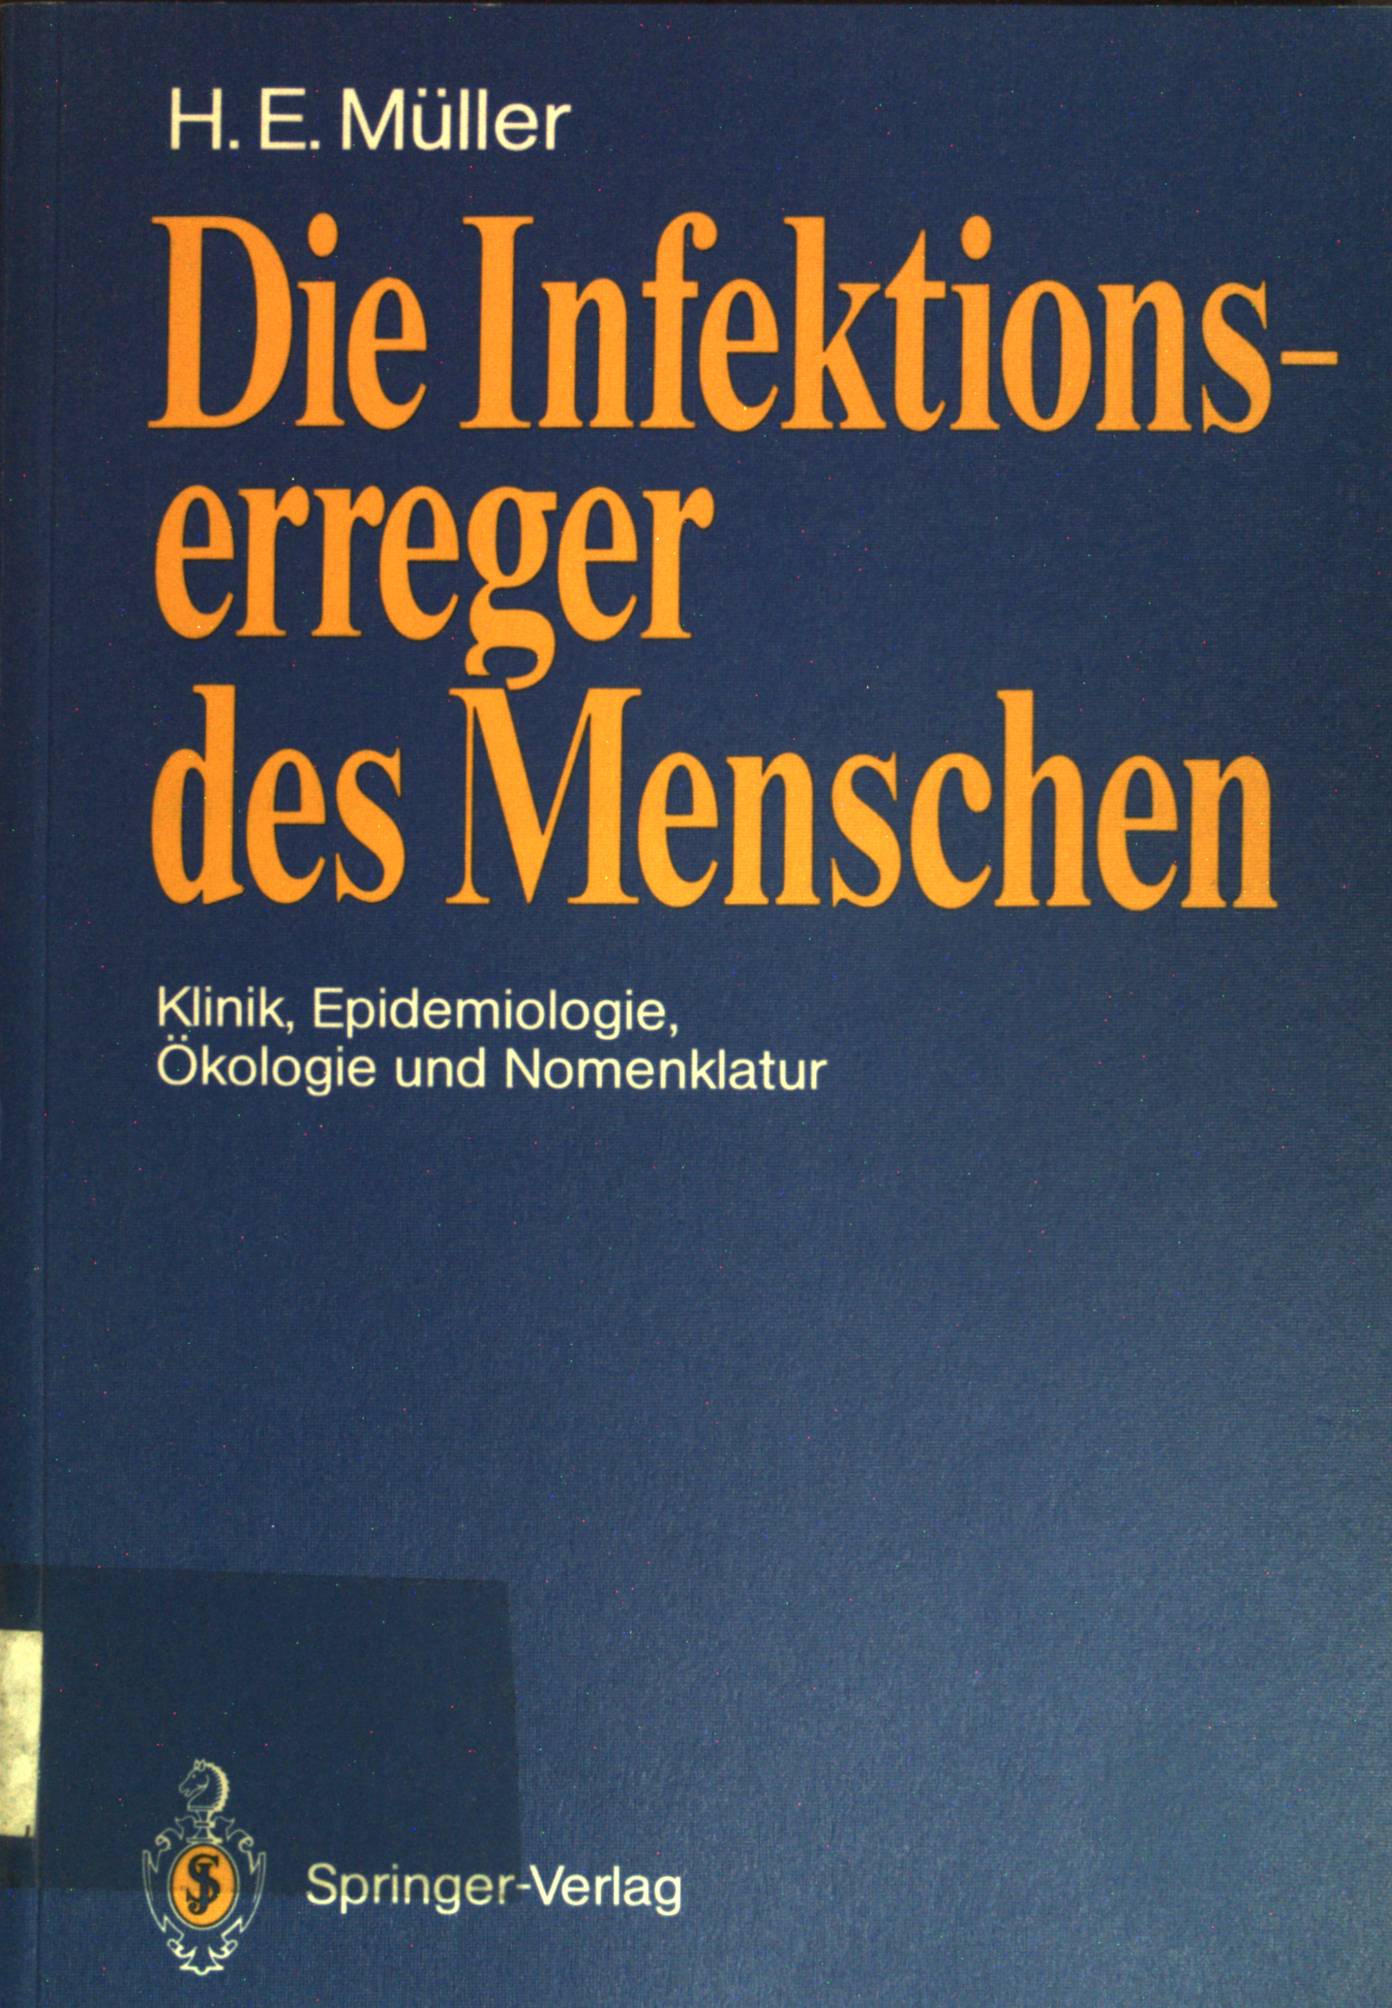 Die Infektionserreger des Menschen : Klinik, Epidemiologie, Ökologie und Nomenklatur. - Müller, Hans E.